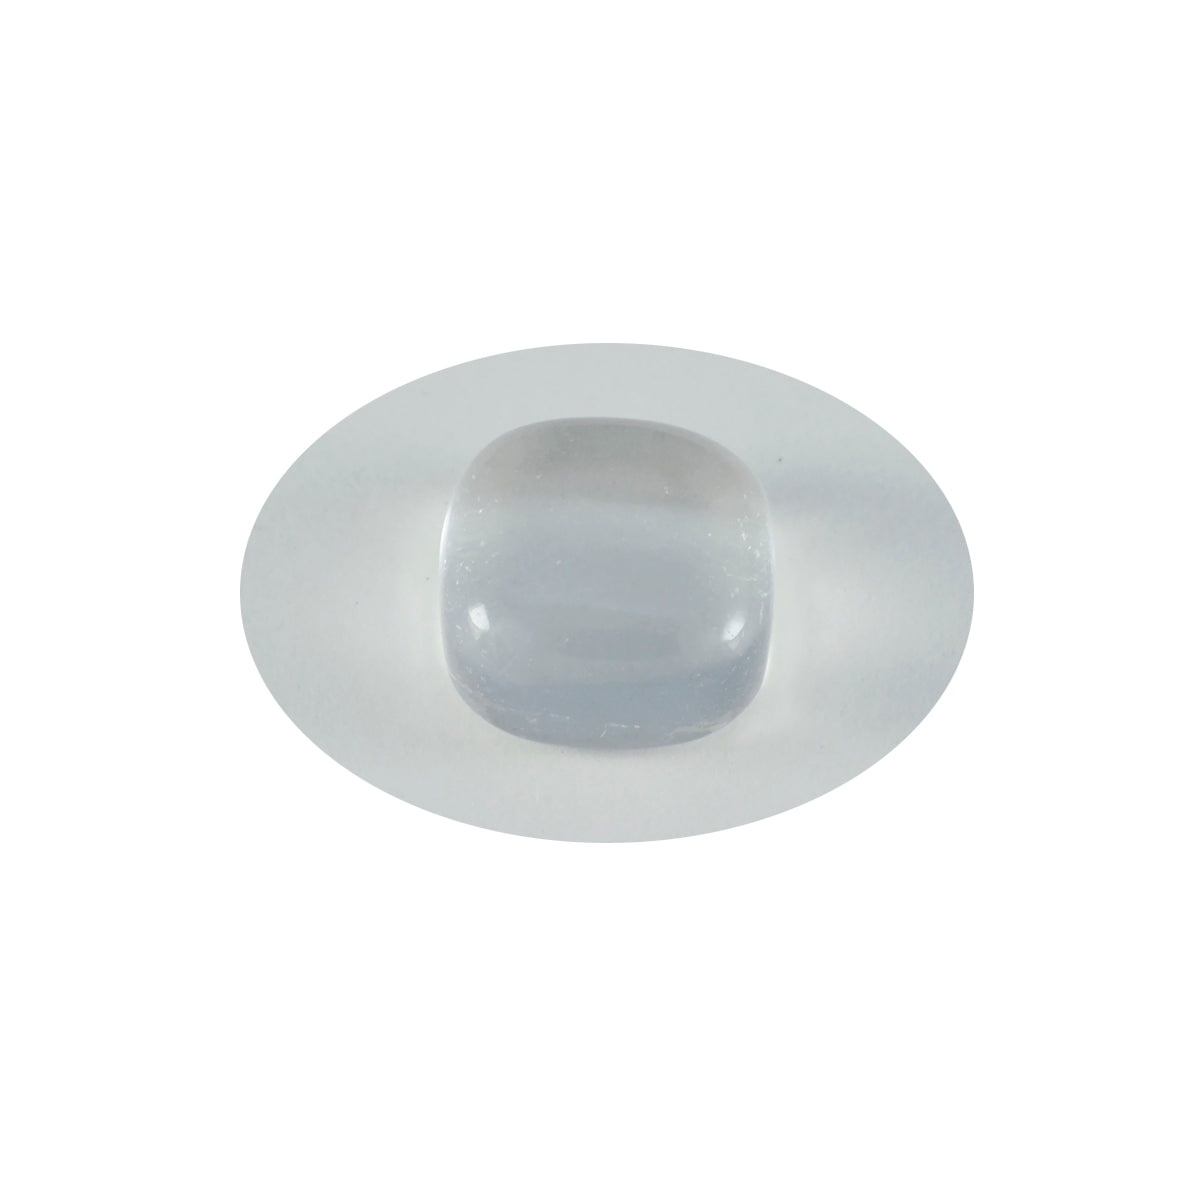 riyogems 1 шт. кабошон из белого кристалла кварца 10x10 мм в форме подушки, красивый качественный свободный драгоценный камень